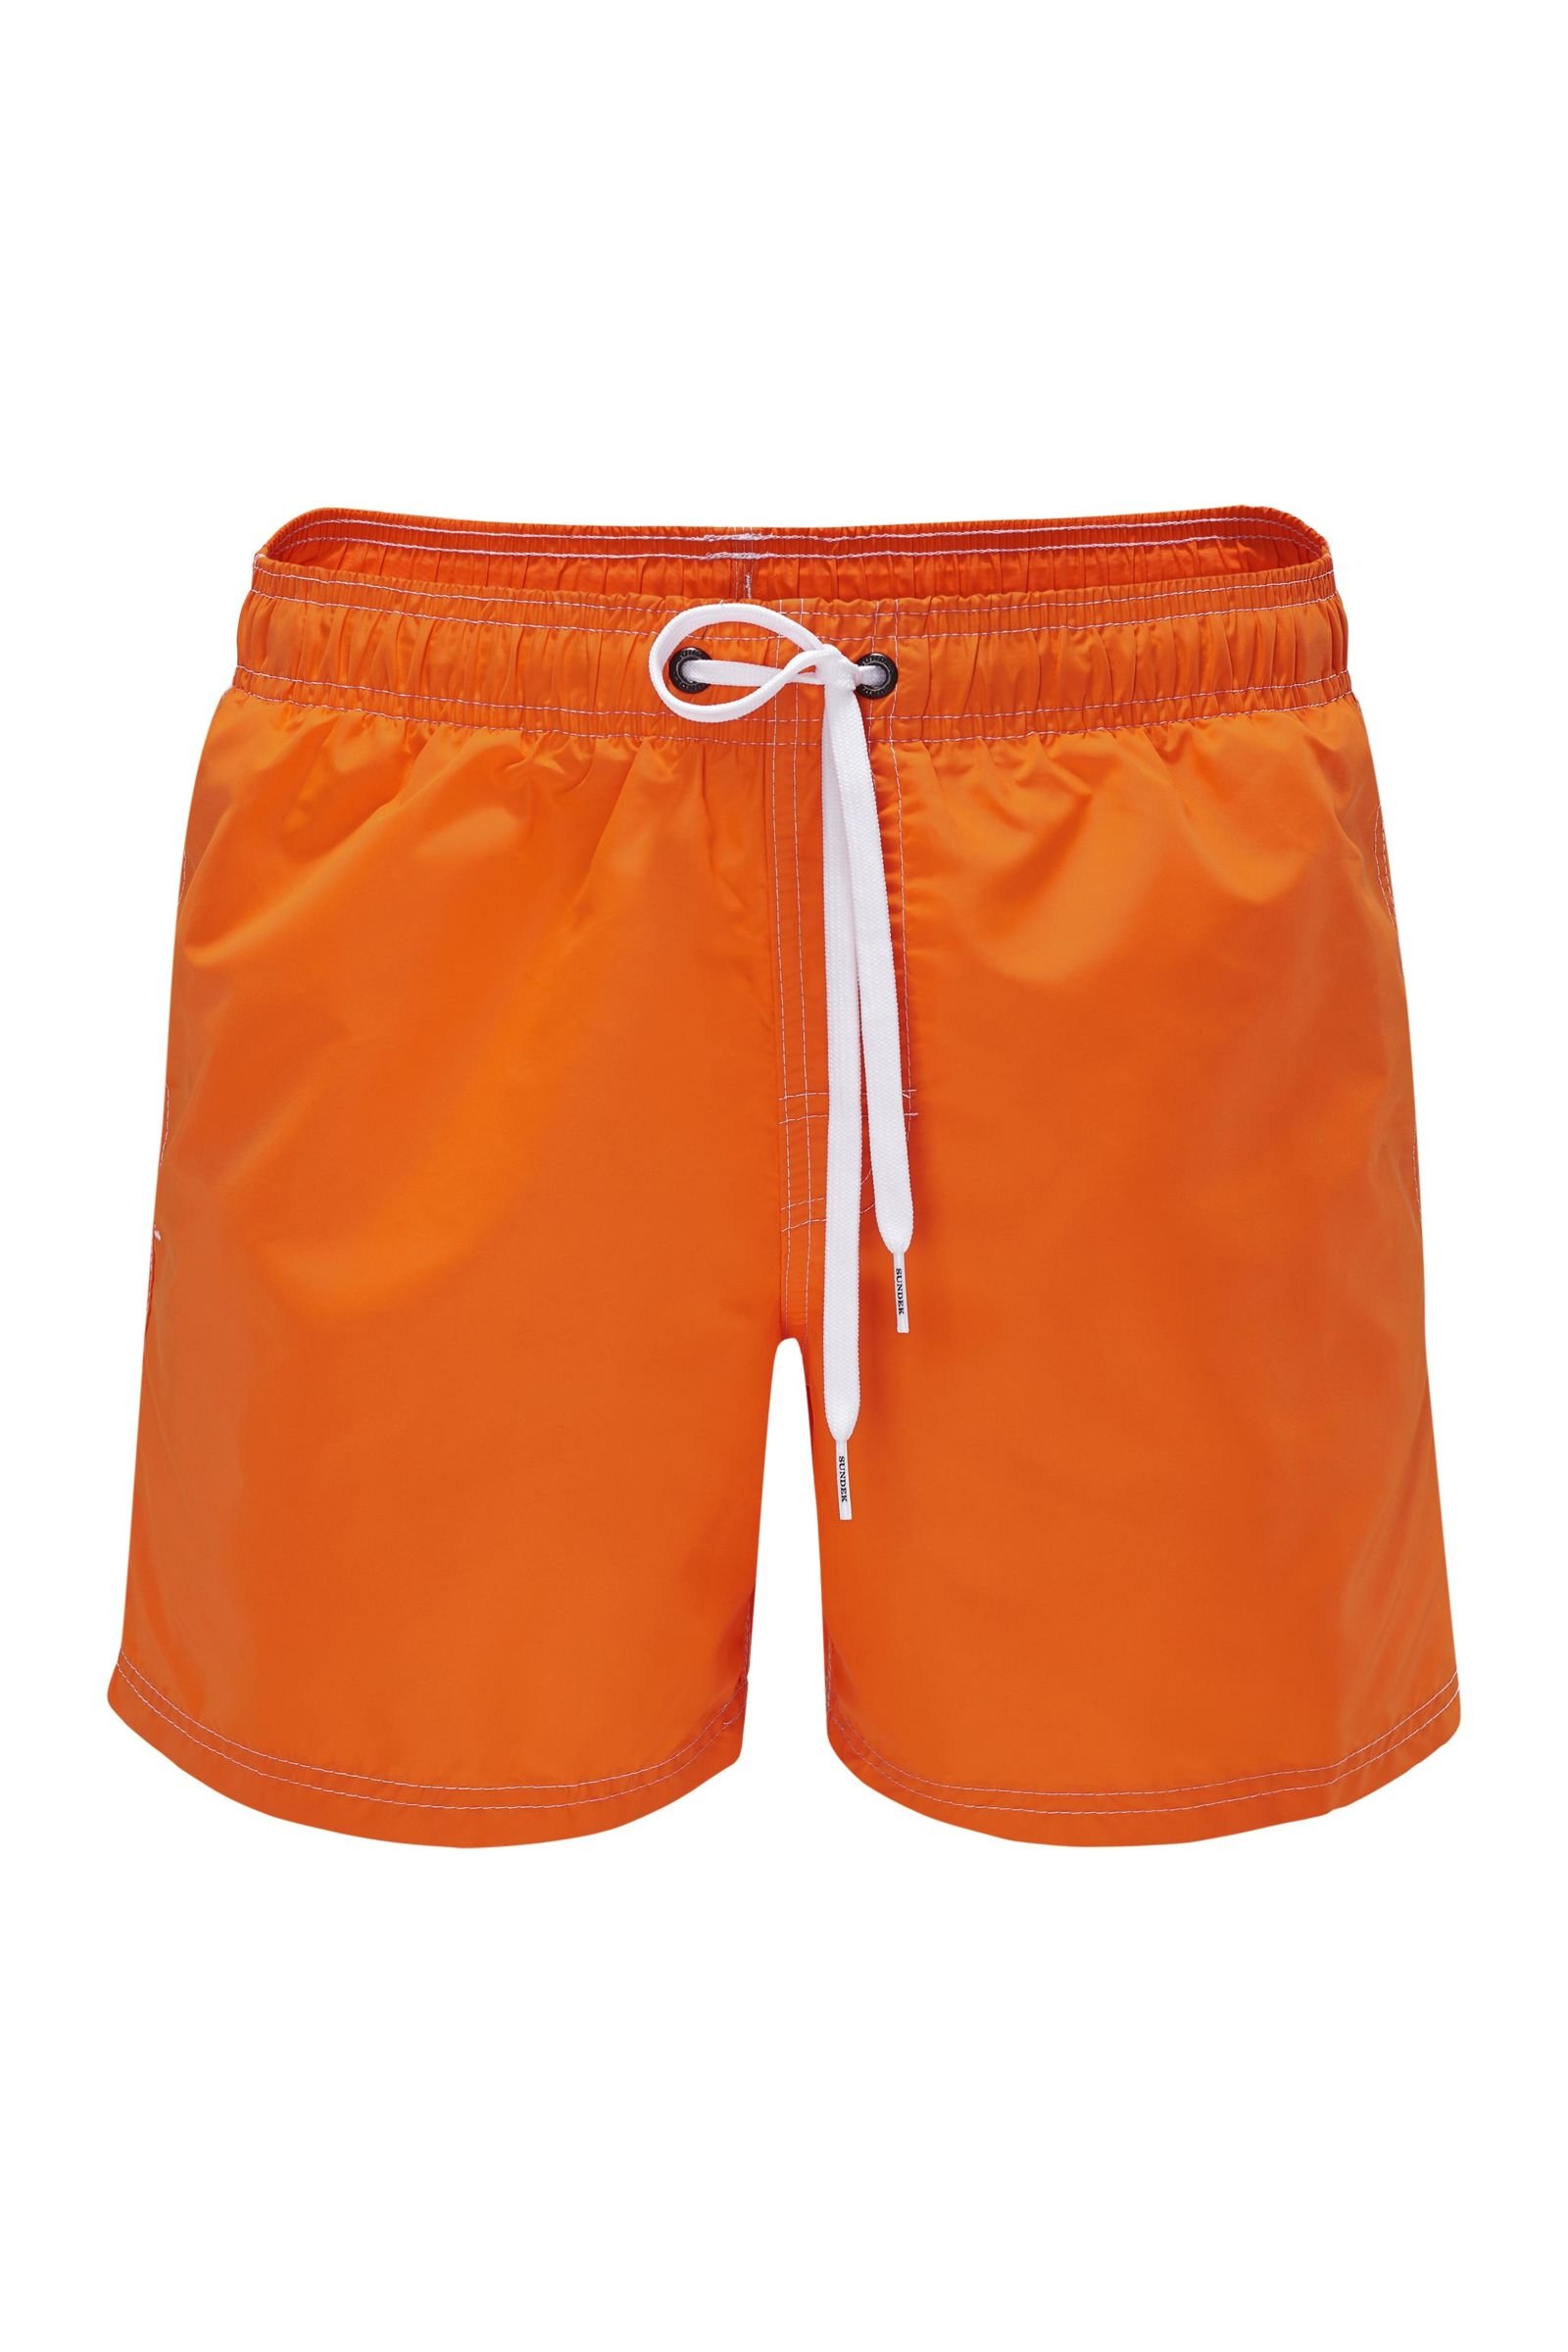 Swim shorts orange